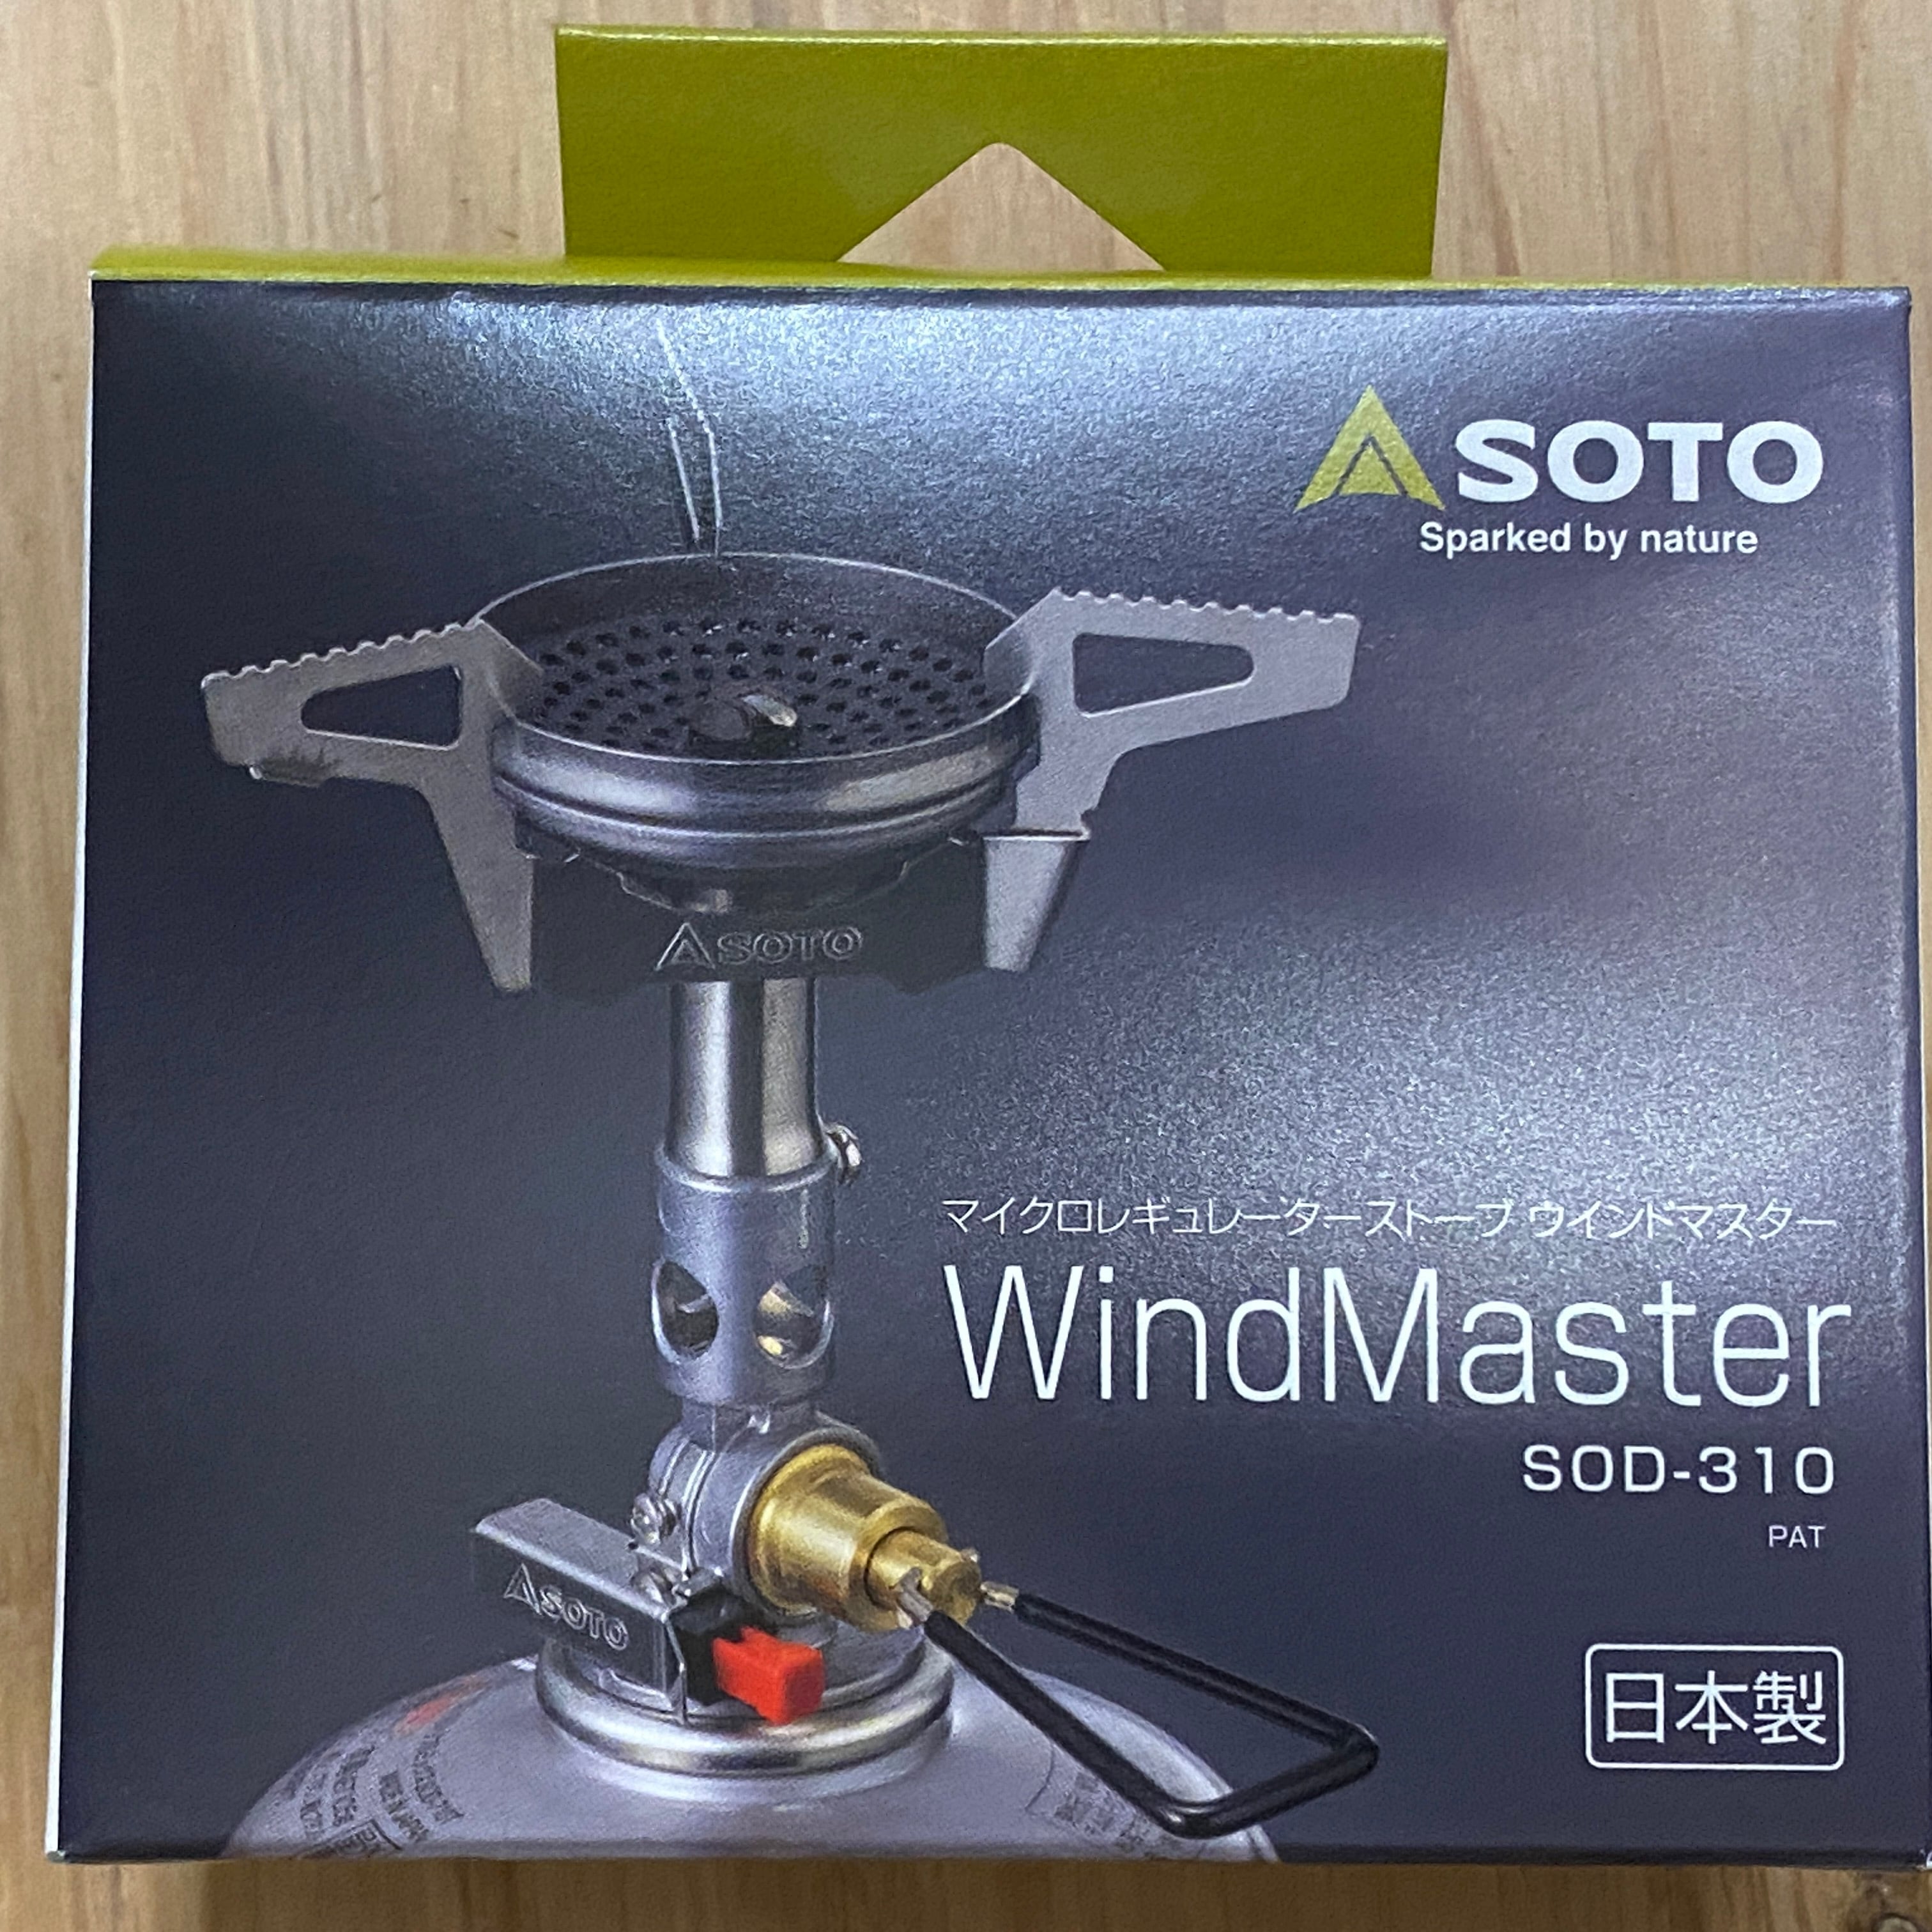 SOTO マイクロレギュレーターストーブ ウインドマスター SOD-310